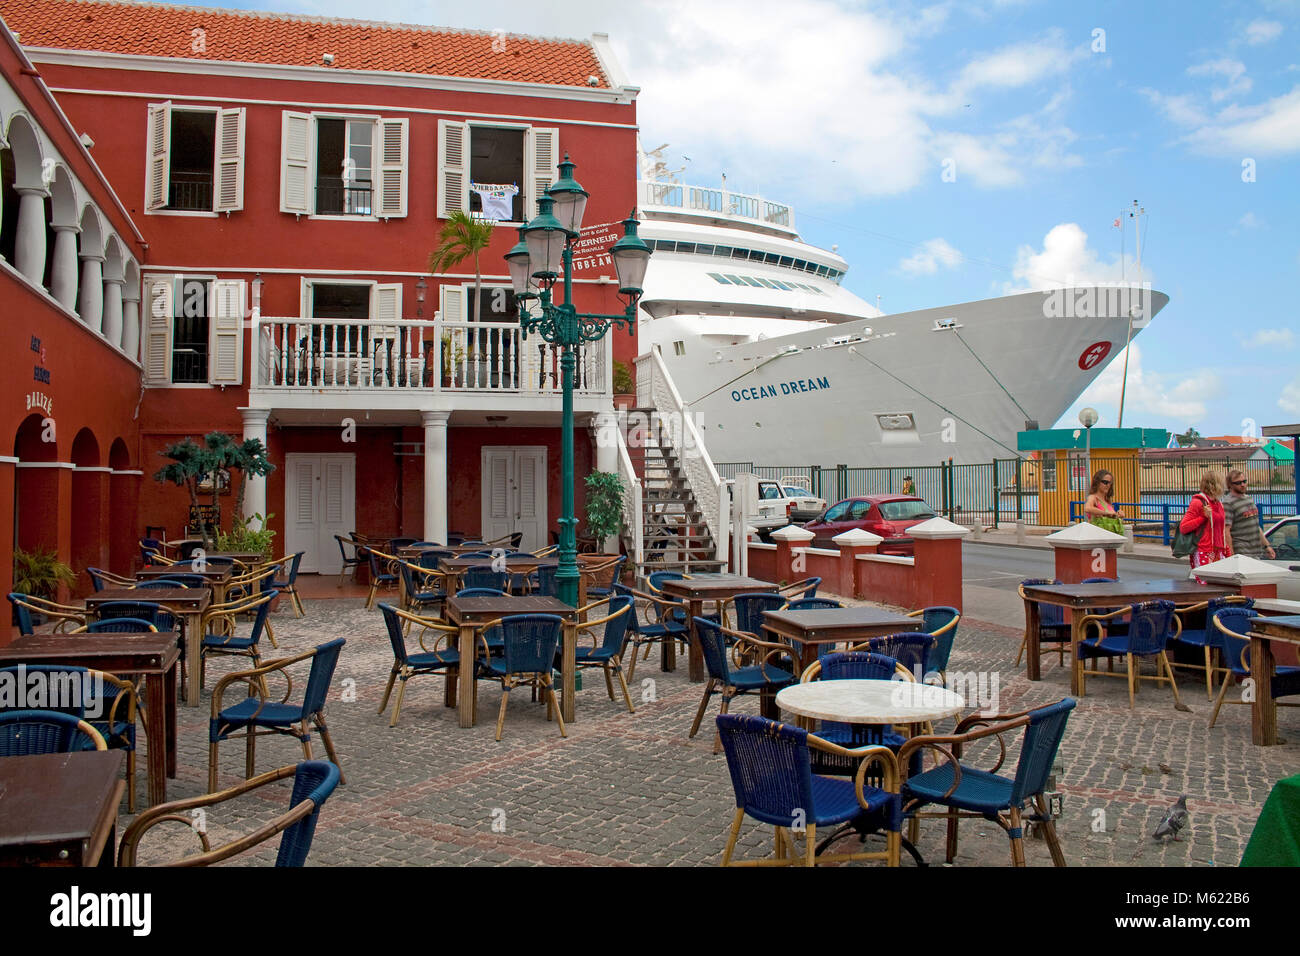 Kreuzfahrtschiff "Ocean Dream" in Sint Anna Baai, Stadtteil Otrobanda, Willemstad, Curacao, Niederländische Antillen, Karibik Stockfoto